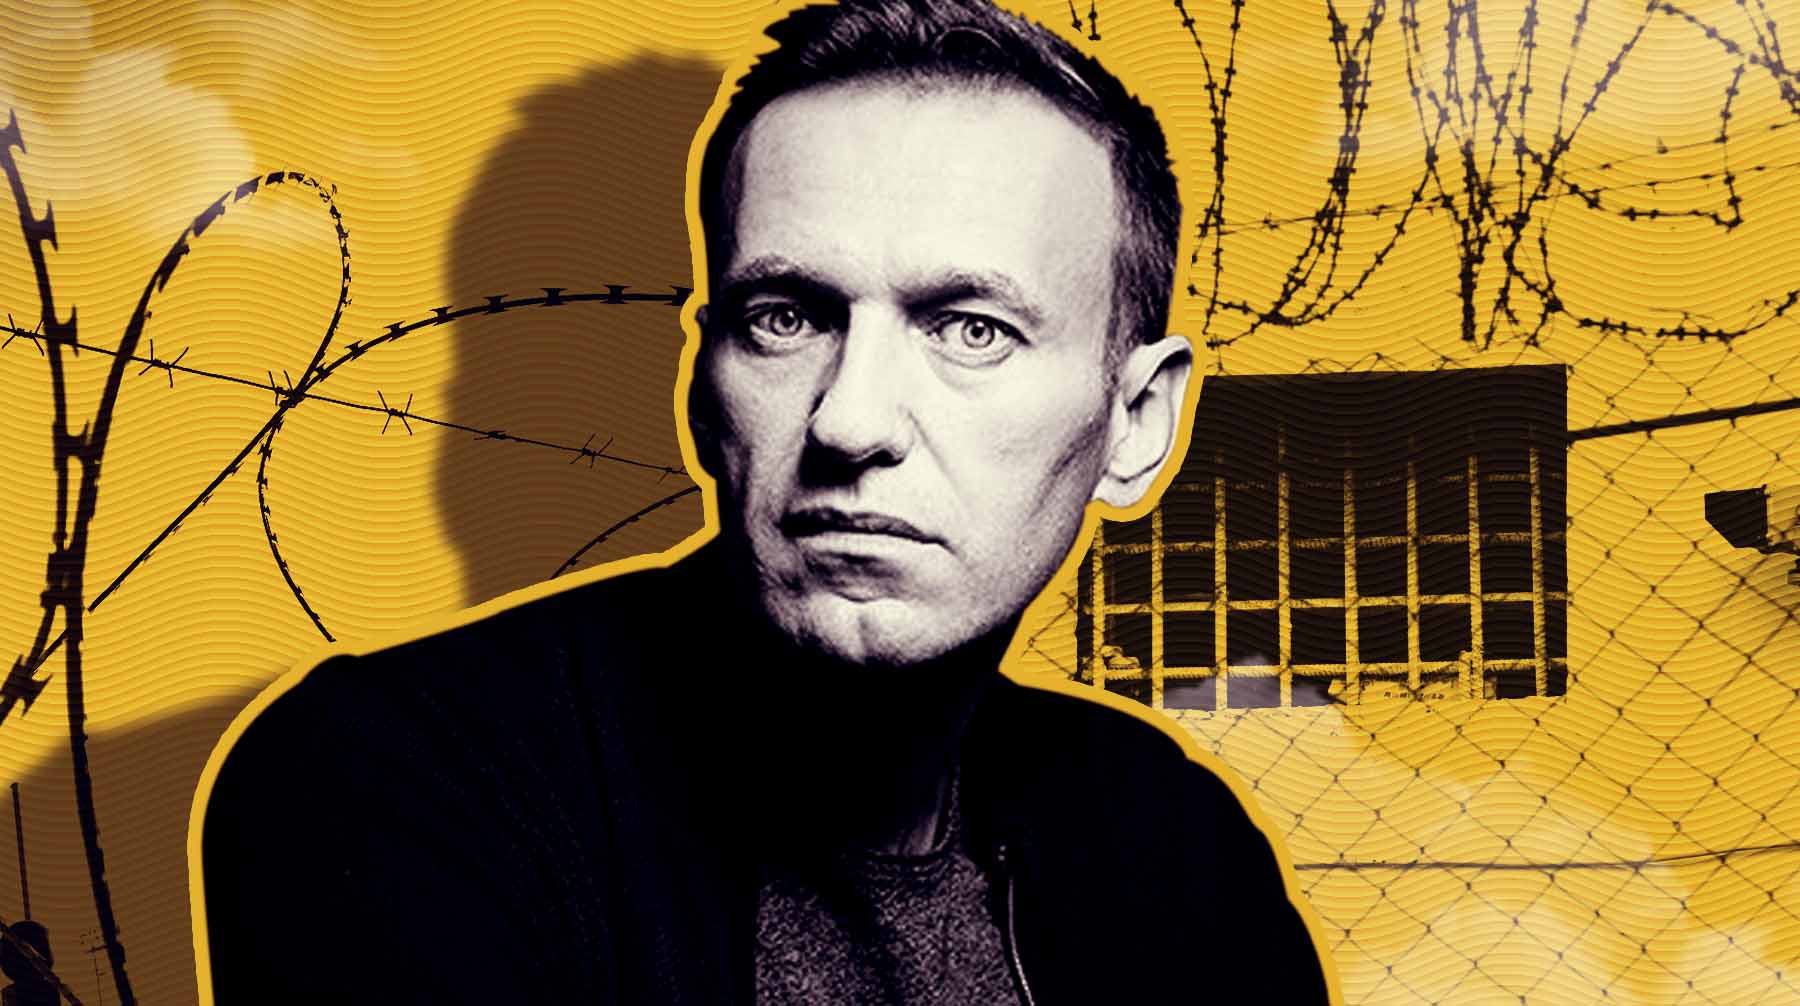 Dailystorm - В ОНК Владимирской области пообещали навестить Навального в новой тюрьме строгого режима